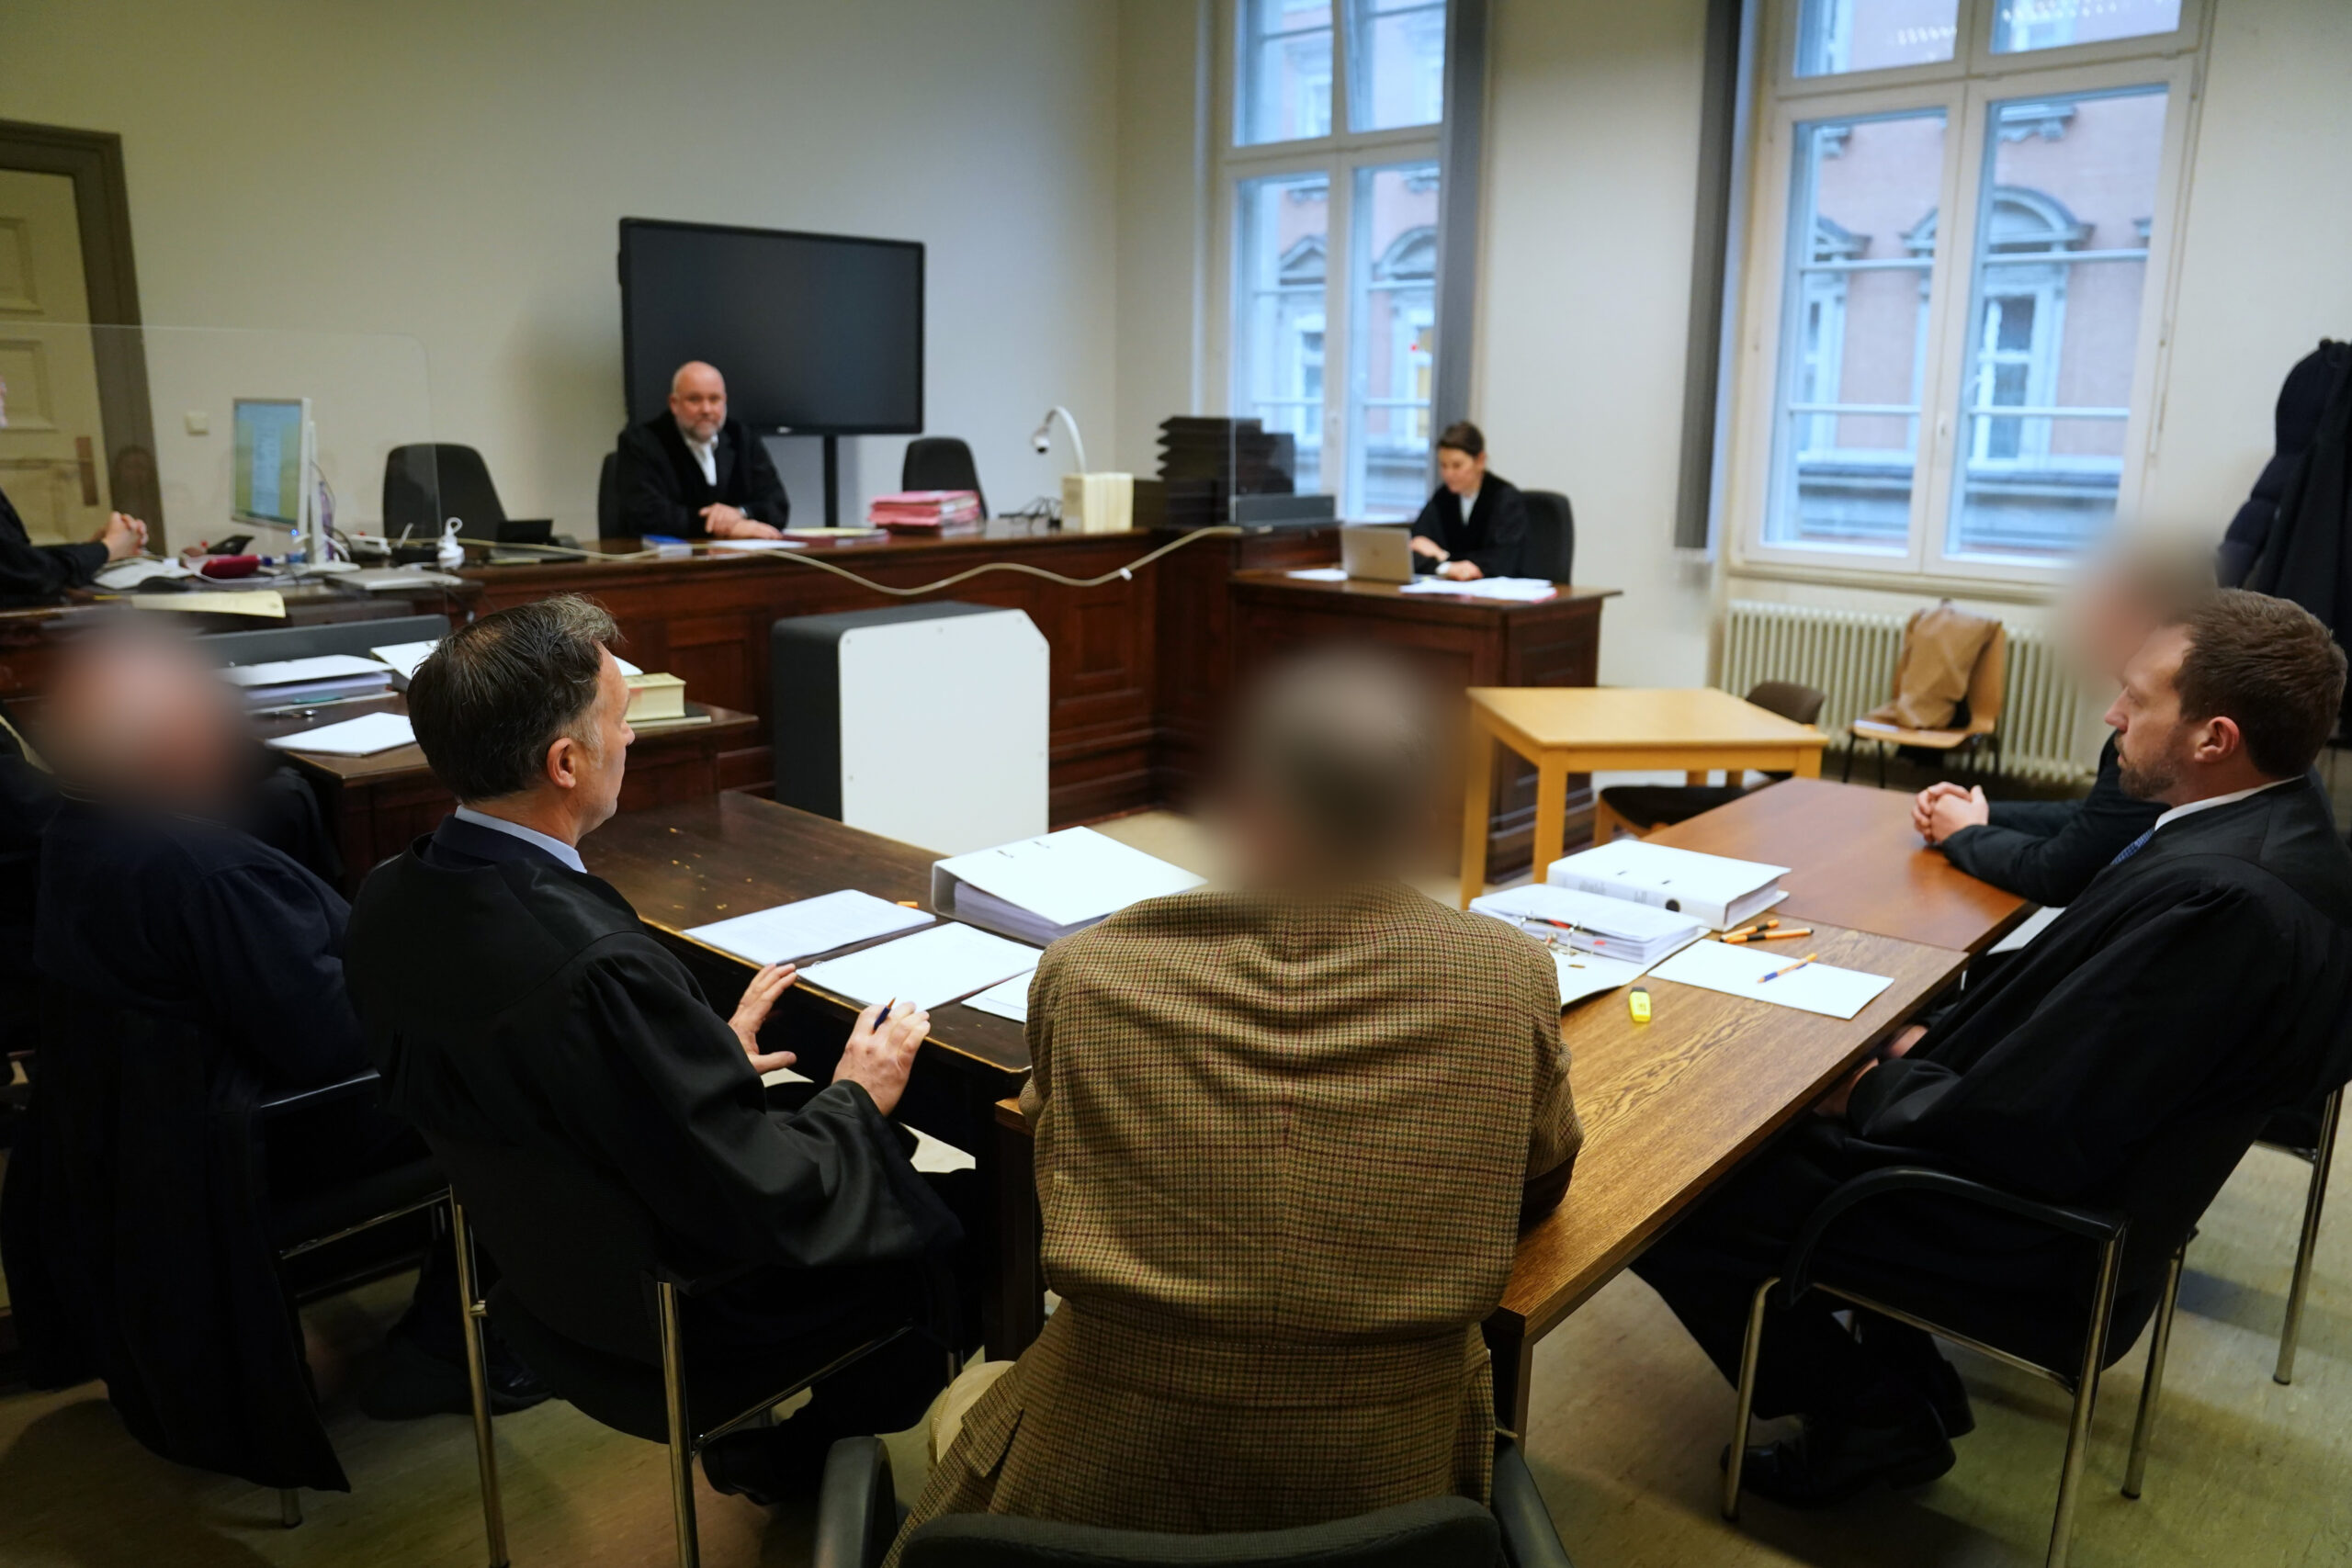 Die Angeklagten (links, mittig, und hinten rechts) sitzen mit ihren Anwälten zu Beginn des Prozesstages im Sitzungssaal.